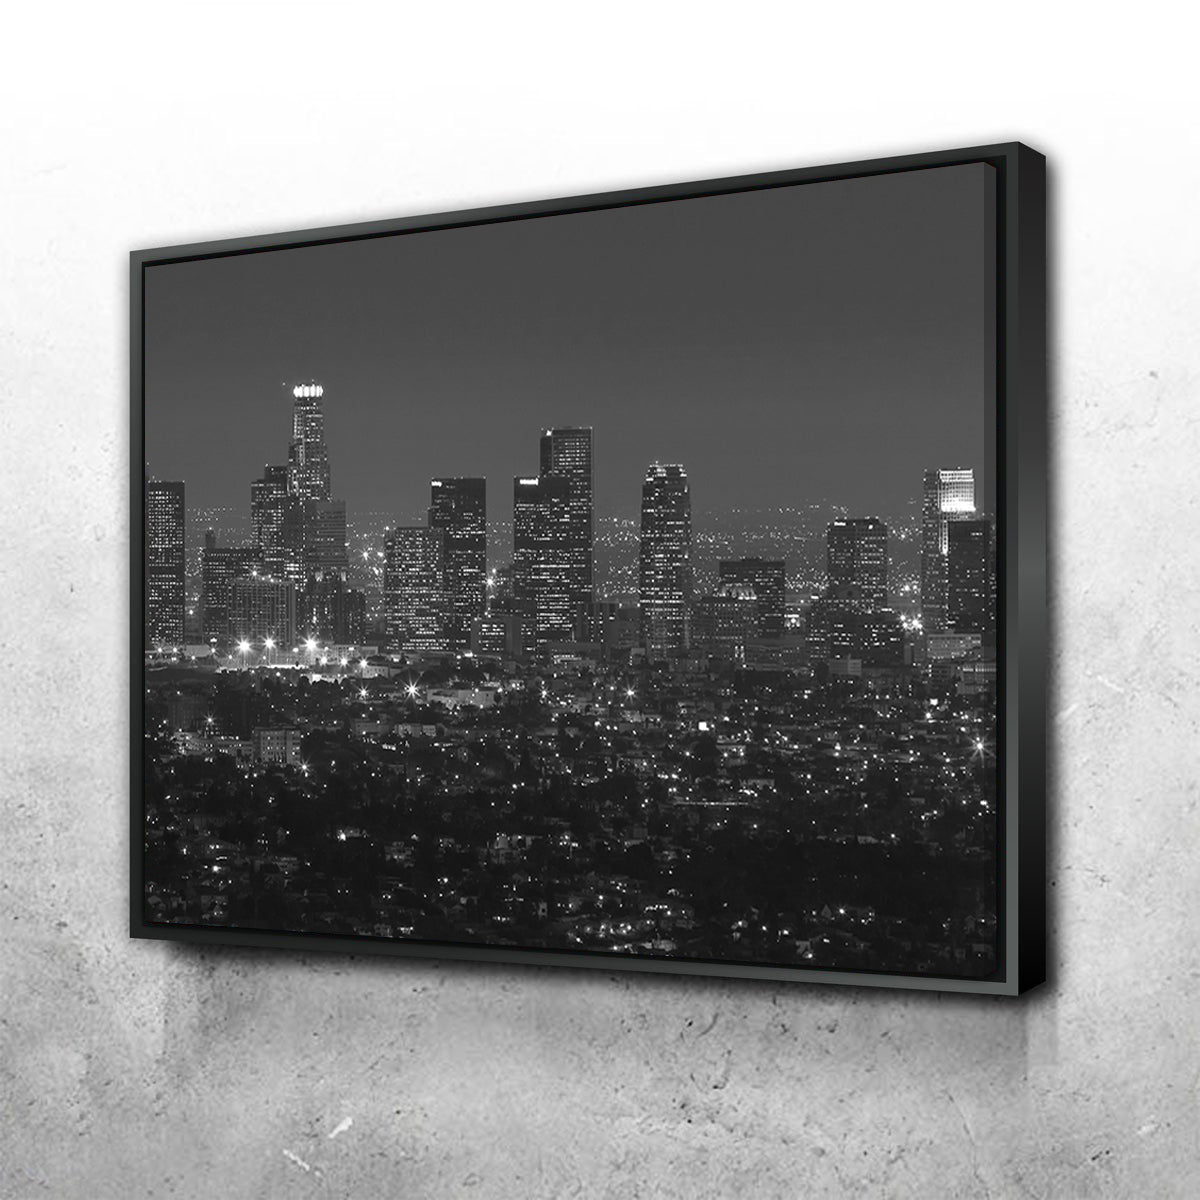 Los Angeles Skyline Canvas Set